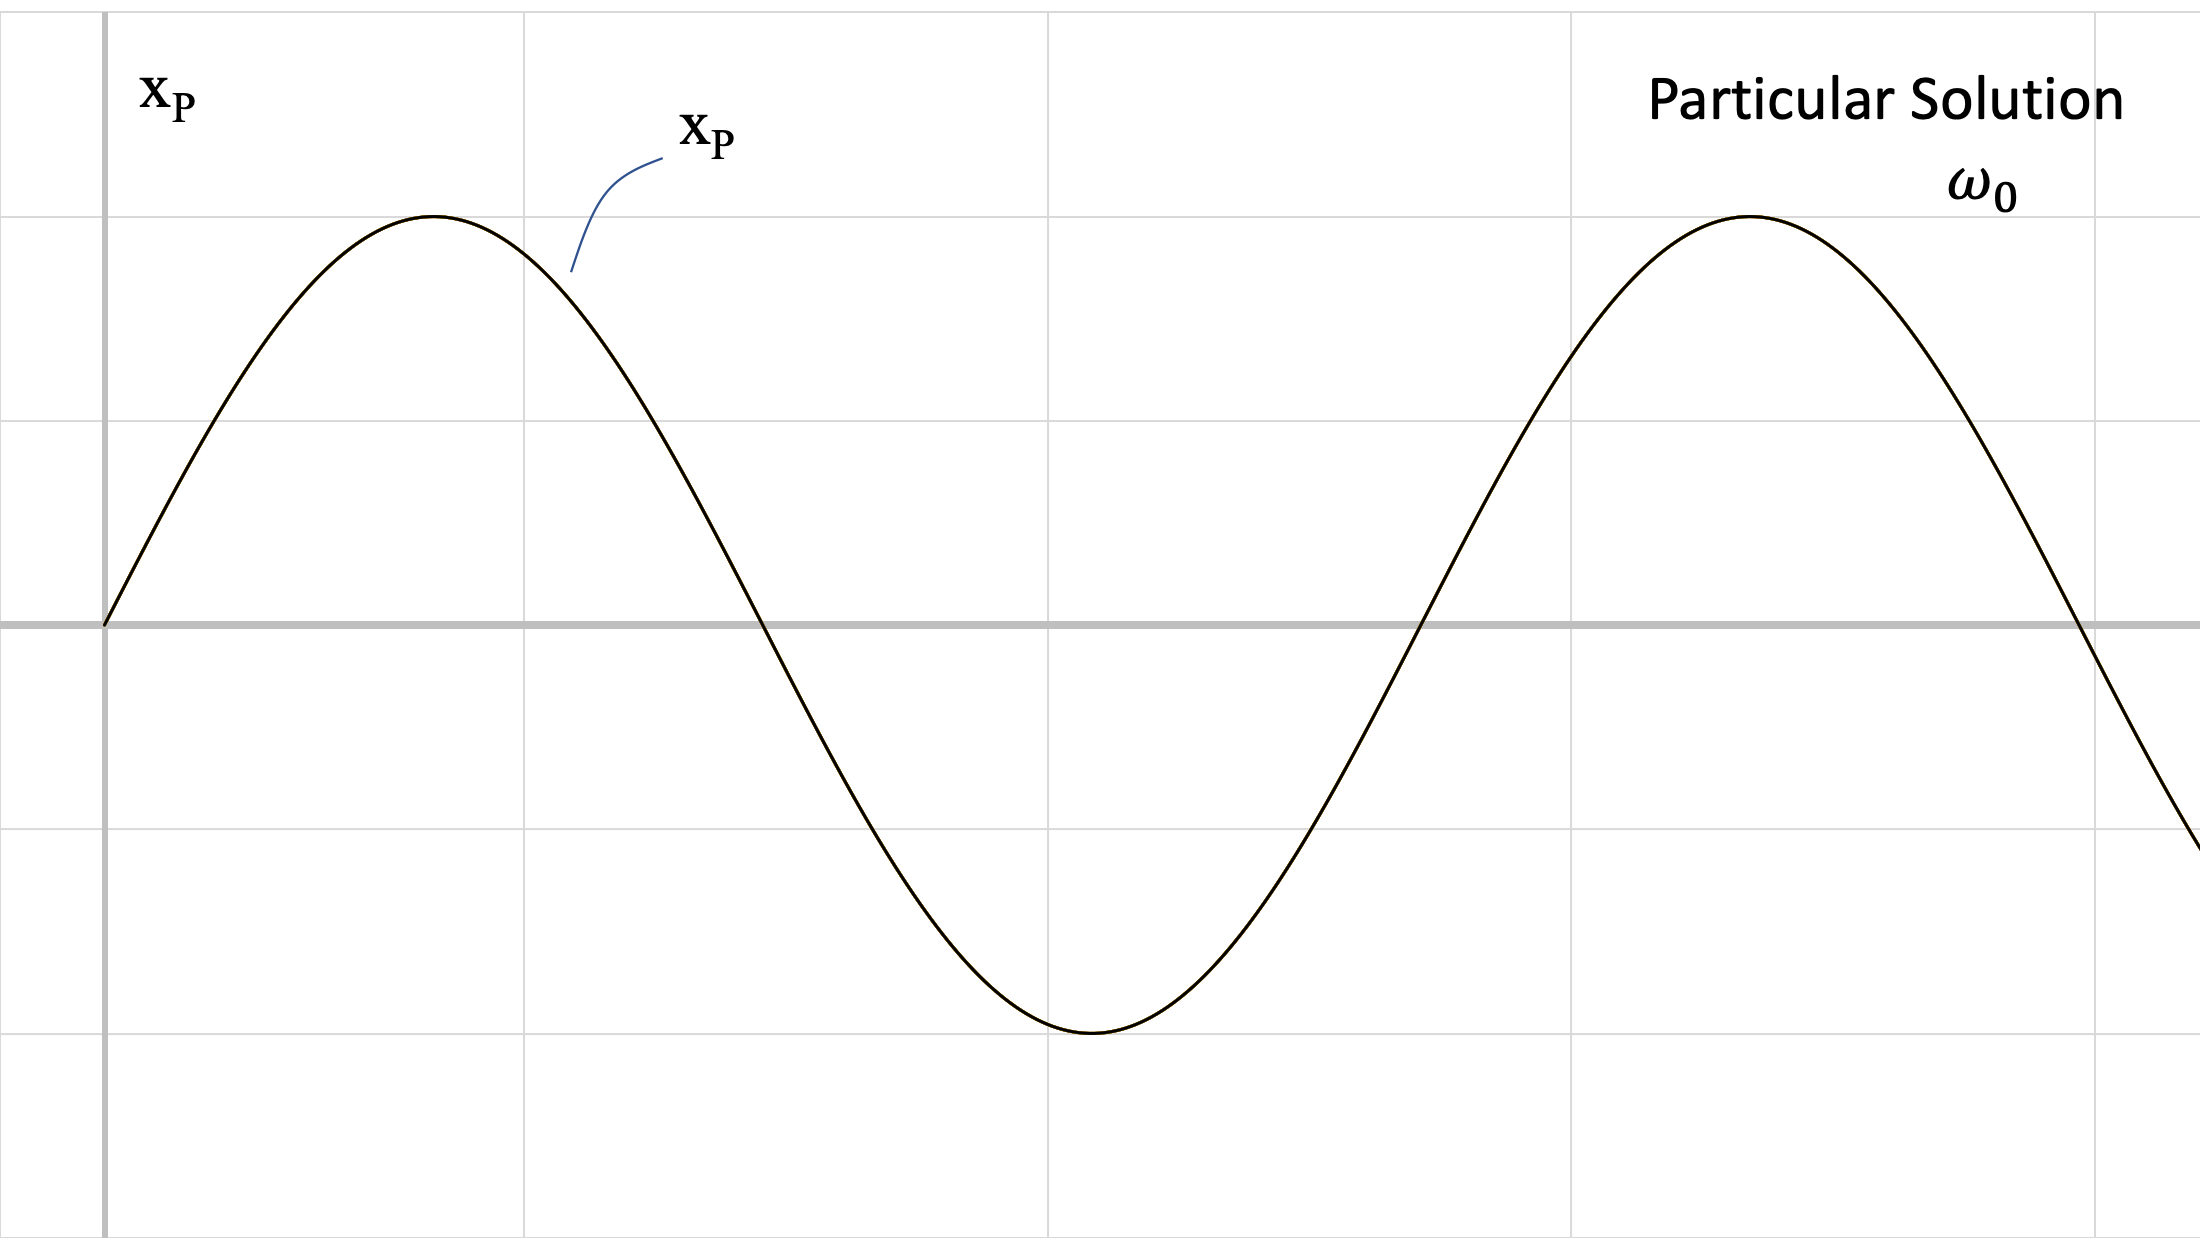 Gráfica de la solución particular a la ecuación de movimiento del sistema, x_p, que toma la forma de una gráfica que oscila regularmente alrededor del eje t horizontal, siendo la amplitud y el período mucho mayores que los de la gráfica x_c.